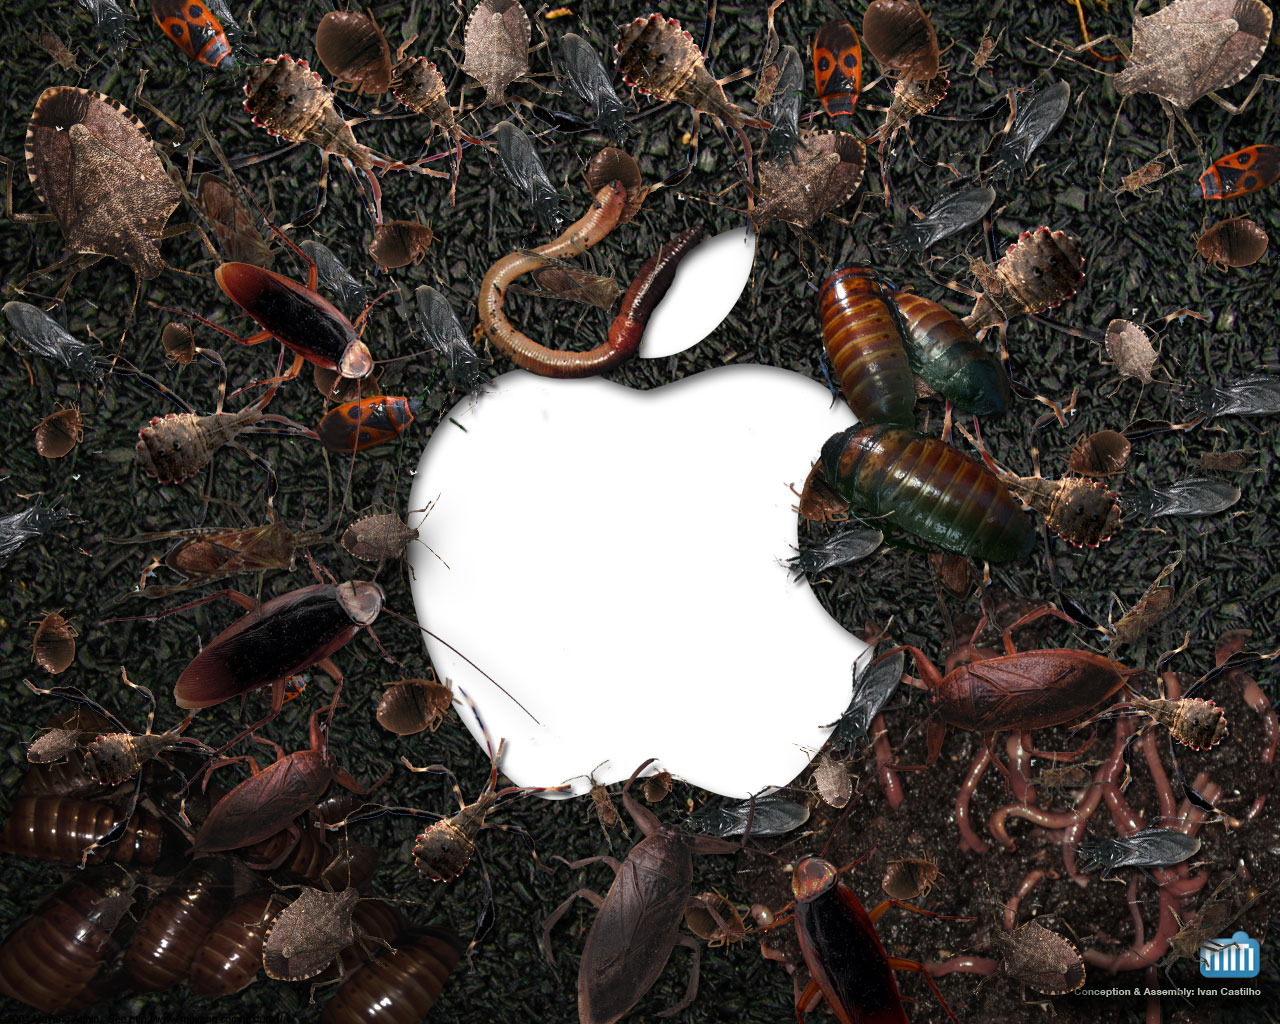 Baratas e insetos (vírus) em volta de logo da Apple